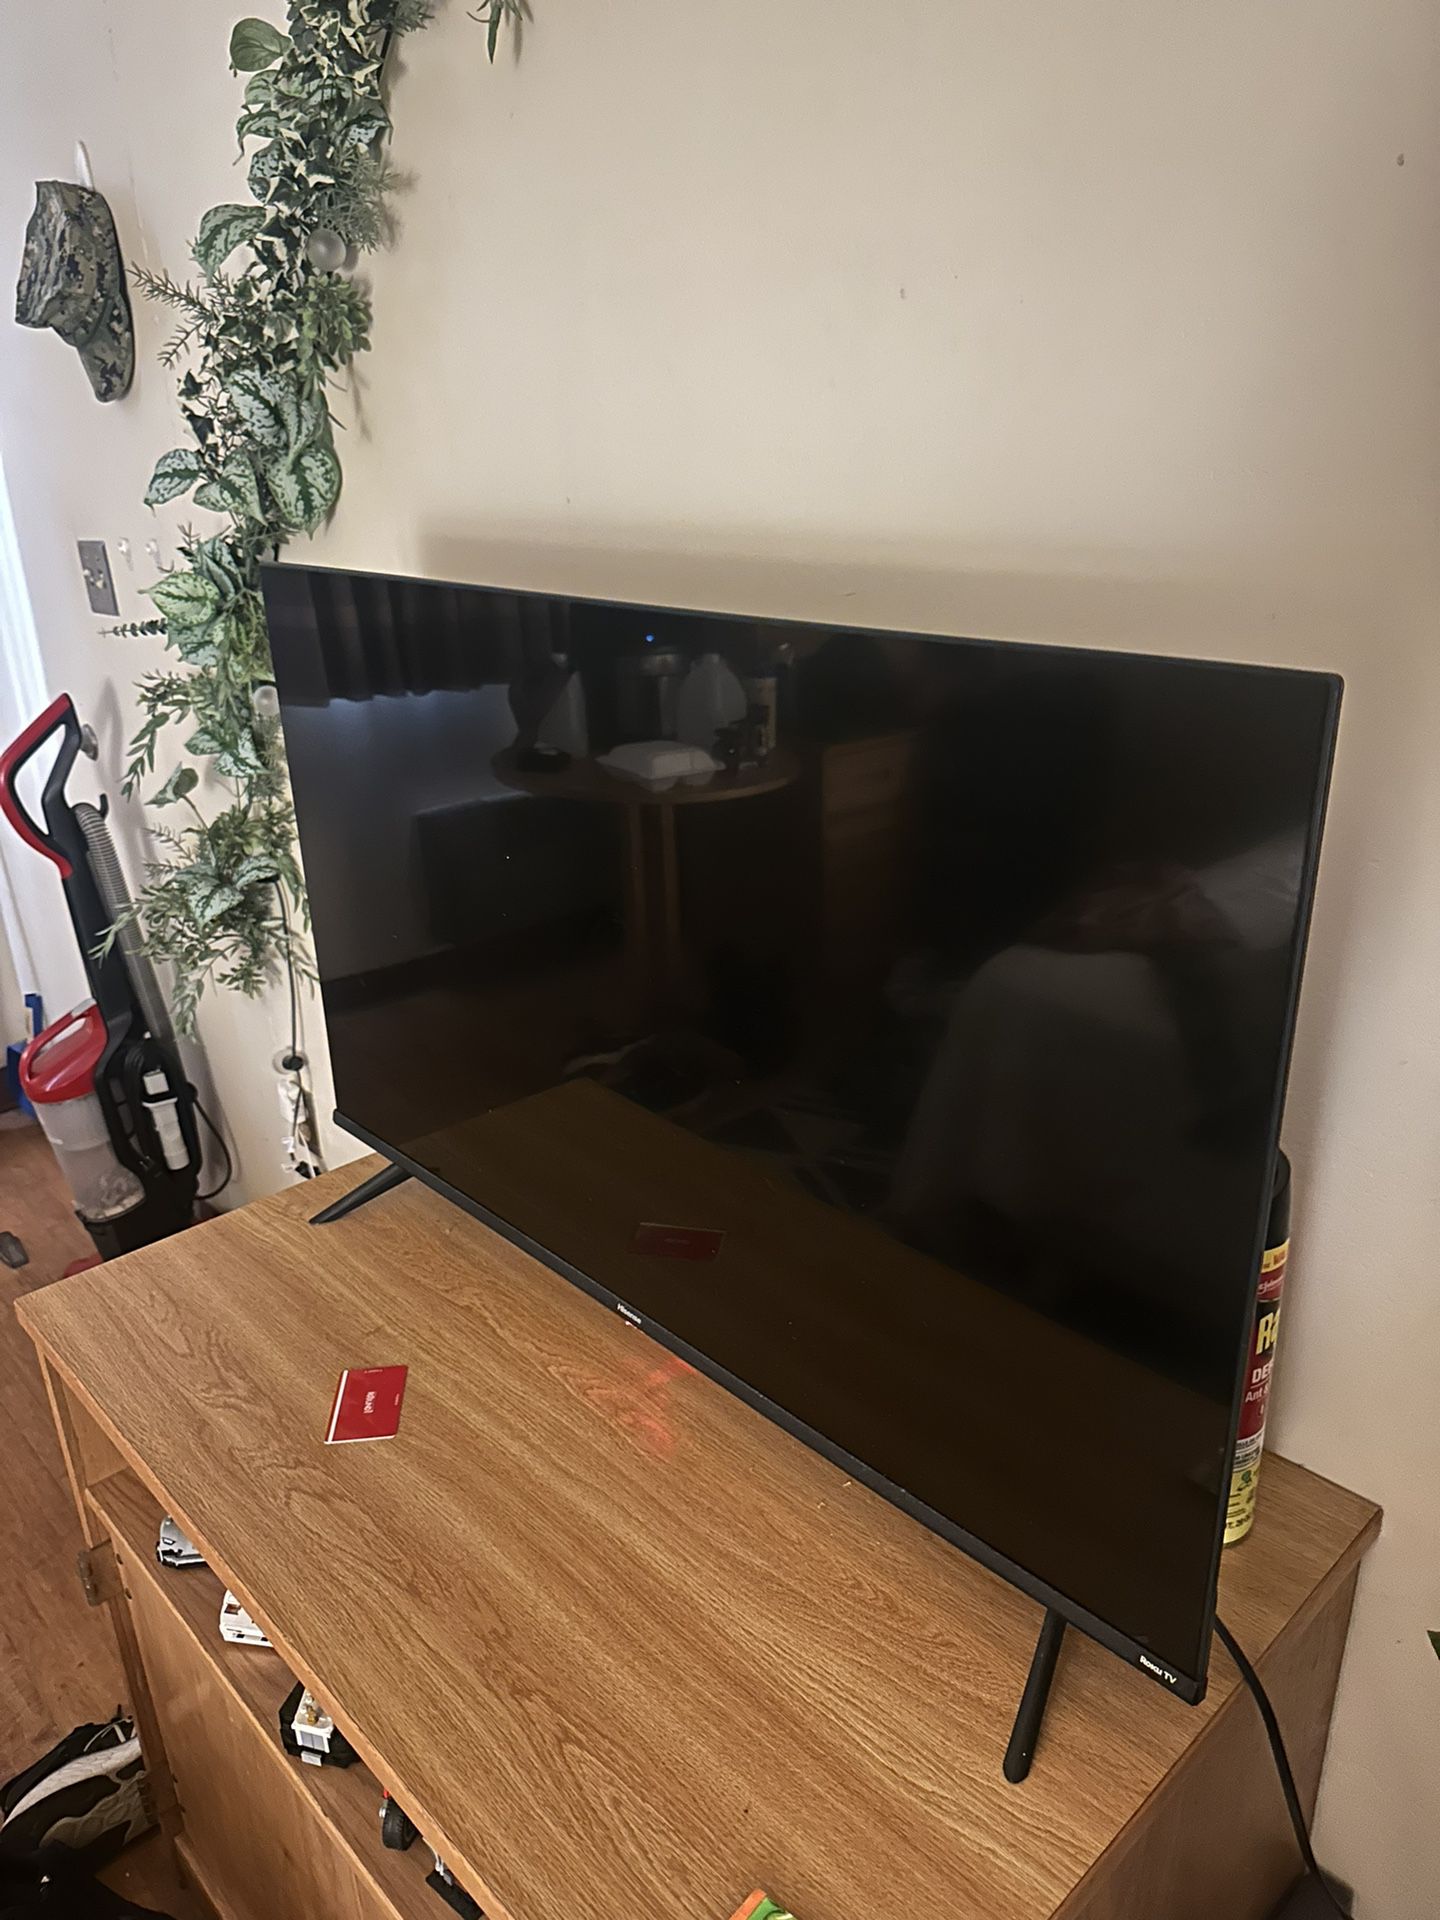 43 inch smart TV w/ roku